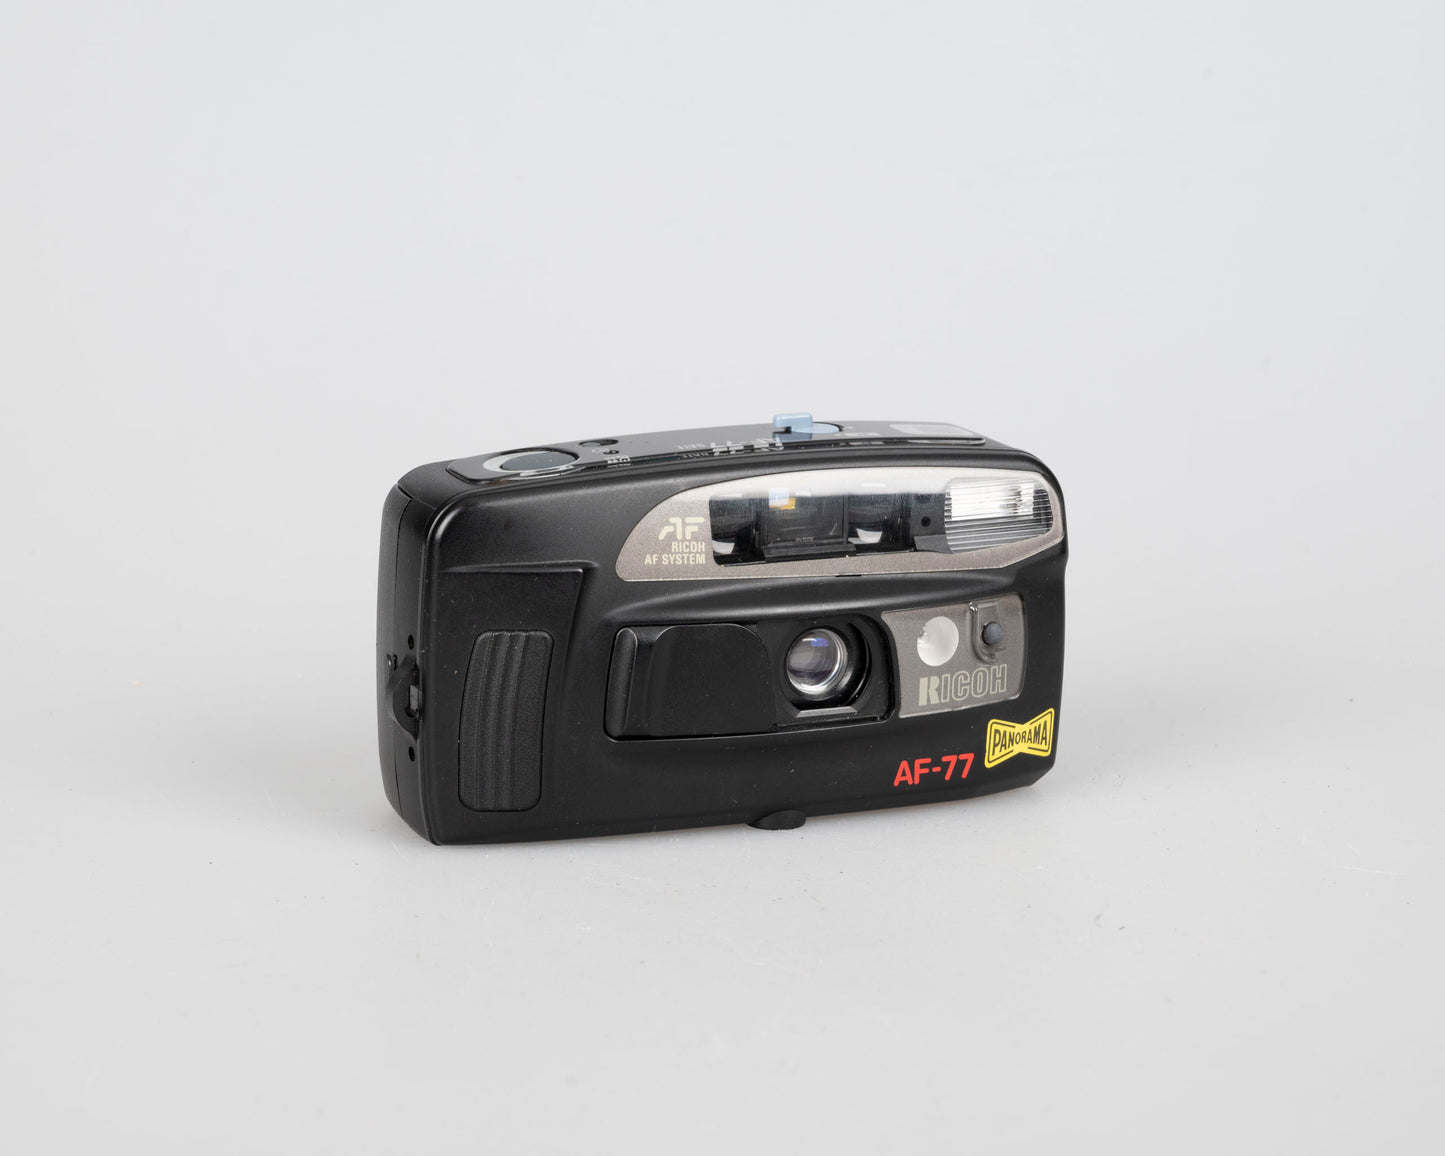 Ricoh AF-77 35mm camera w/ case (serial 142029)